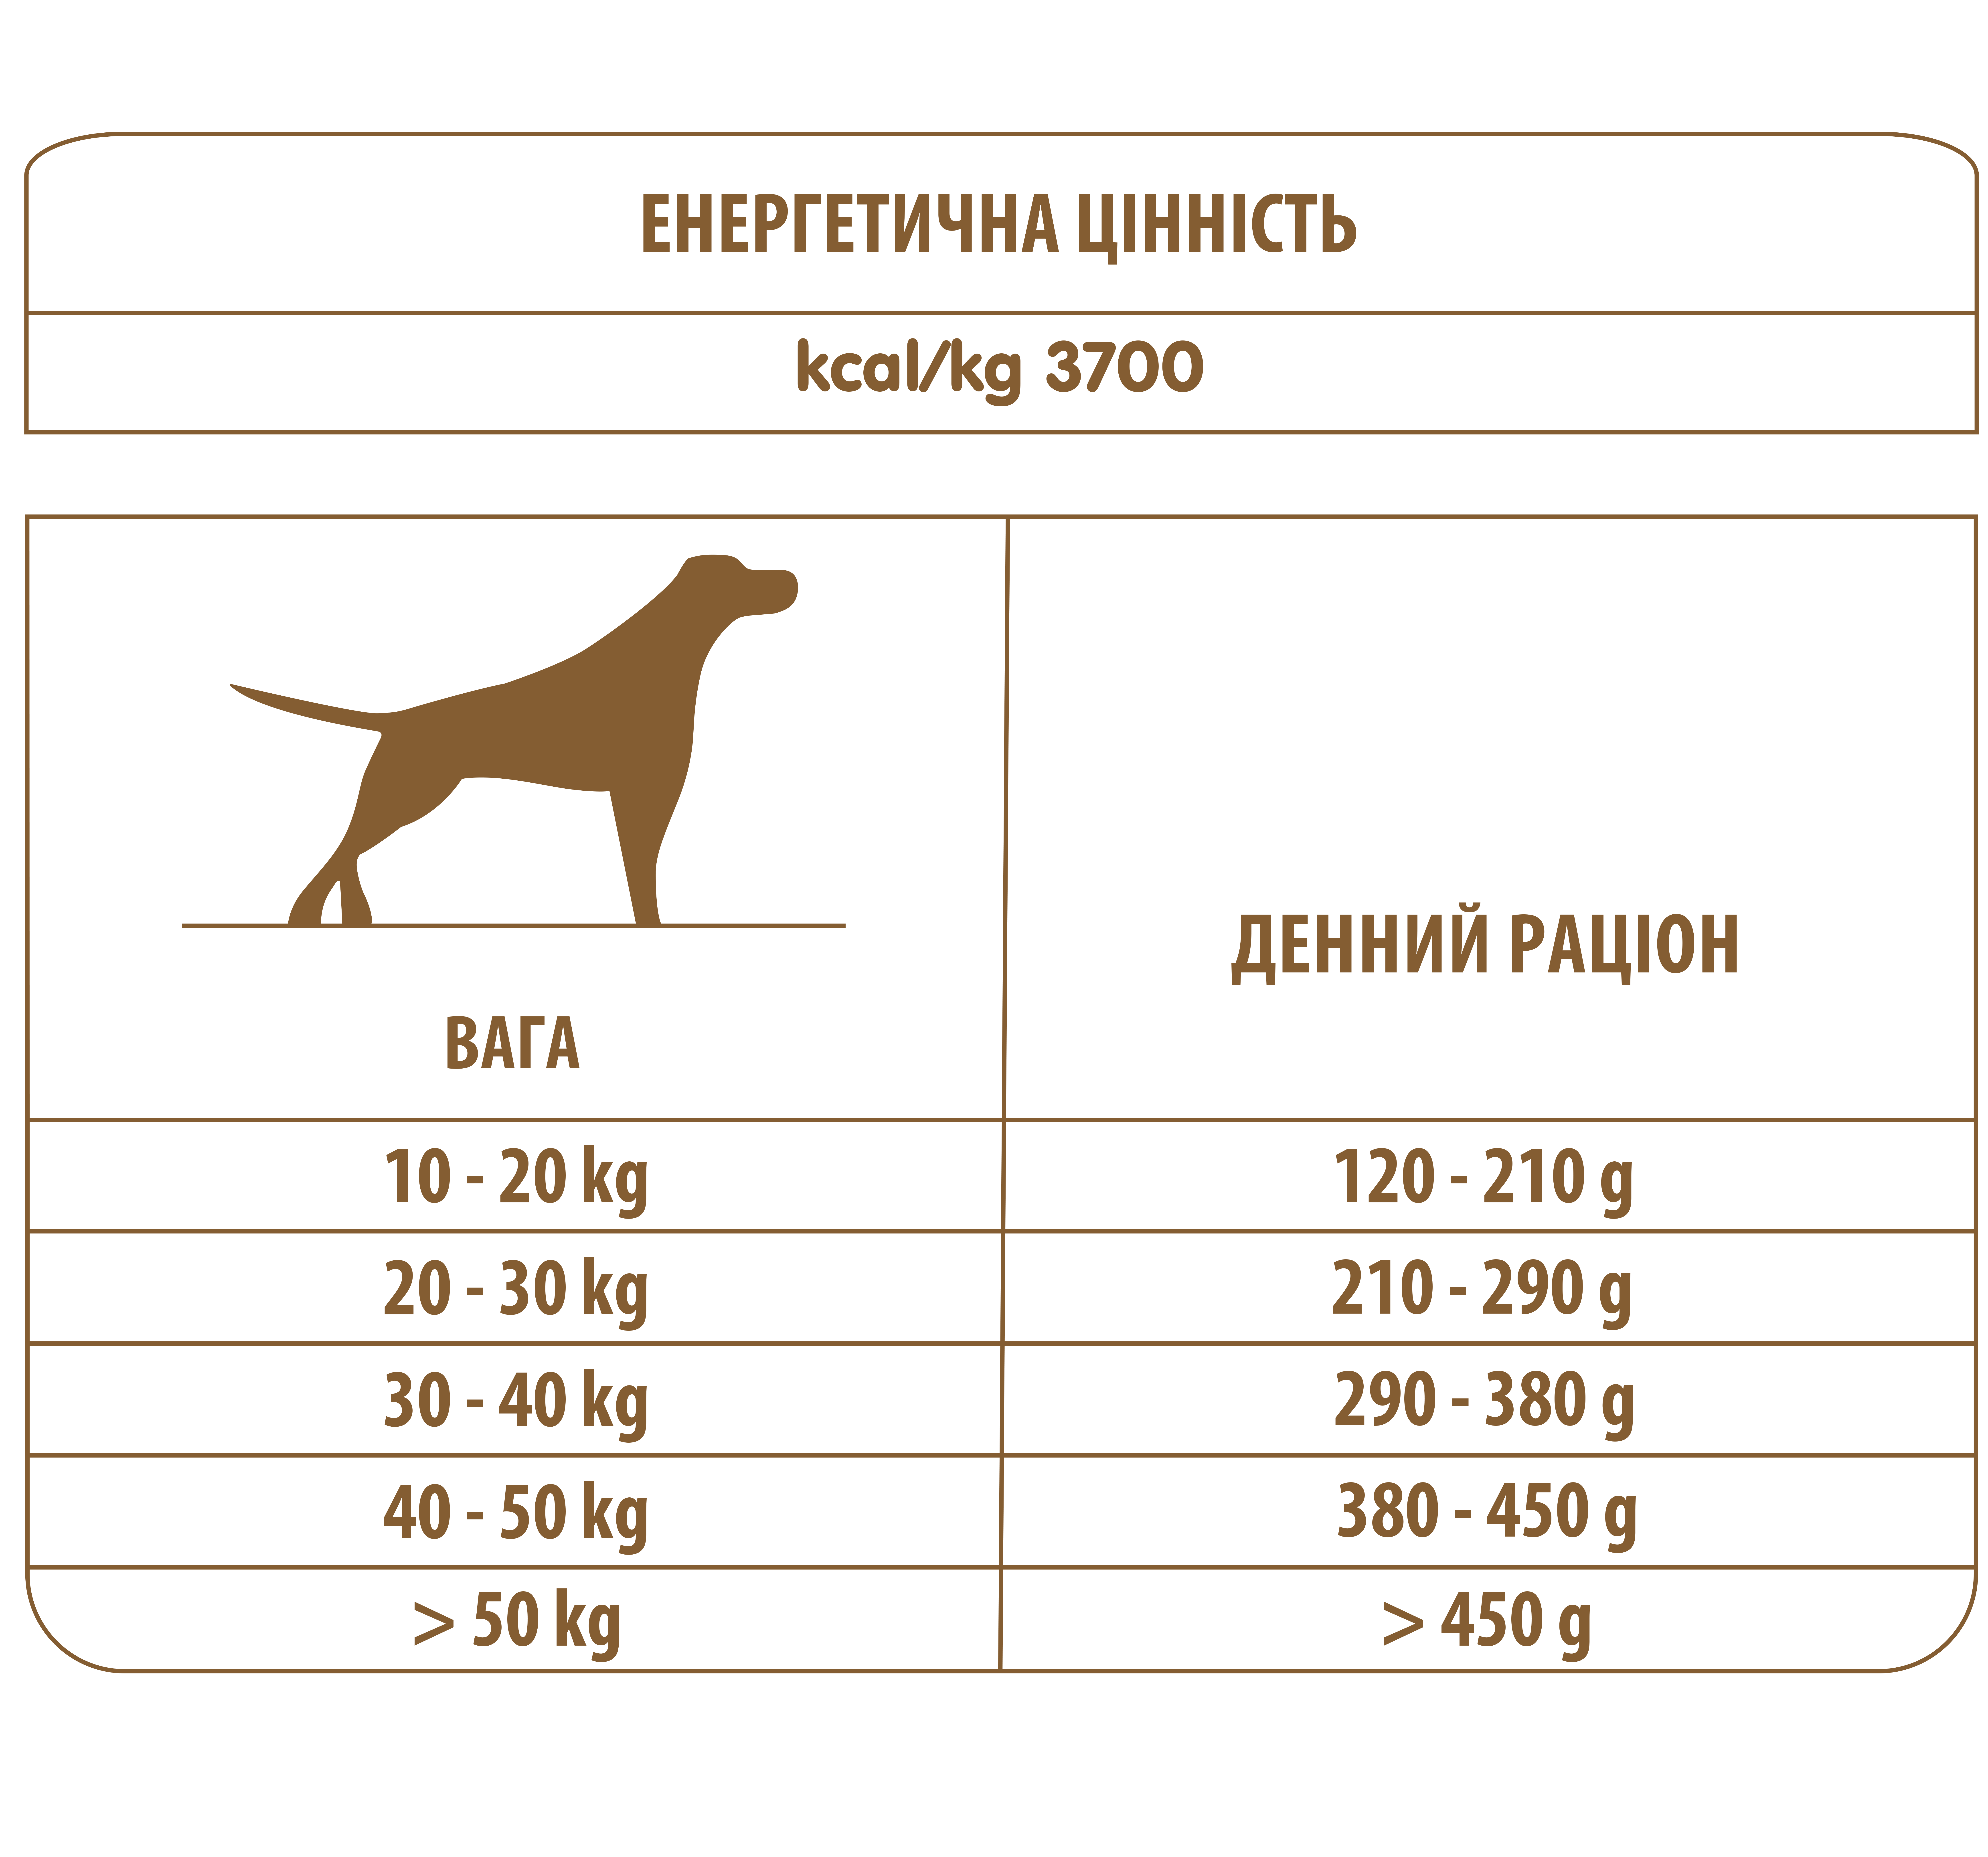 картинка Almo Nature Holistic Dog для собак середніх та великих порід з тунцем і рисом